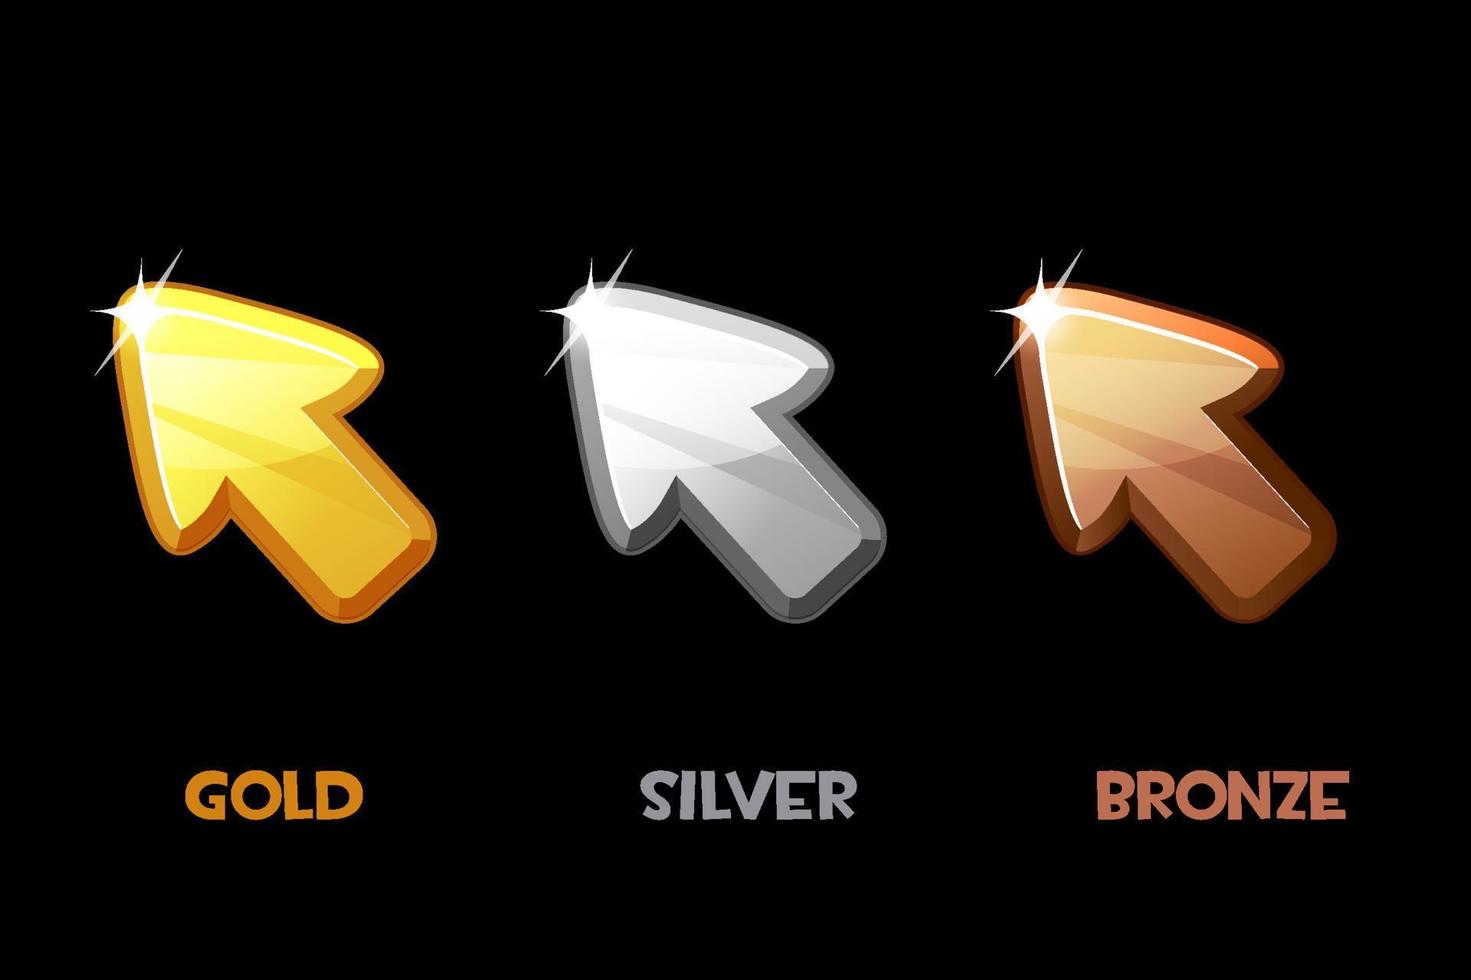 vektor isolierte goldene, silberne und bronzene pfeile. Illustration einer Reihe von Metallcursoren für ein Spiel.